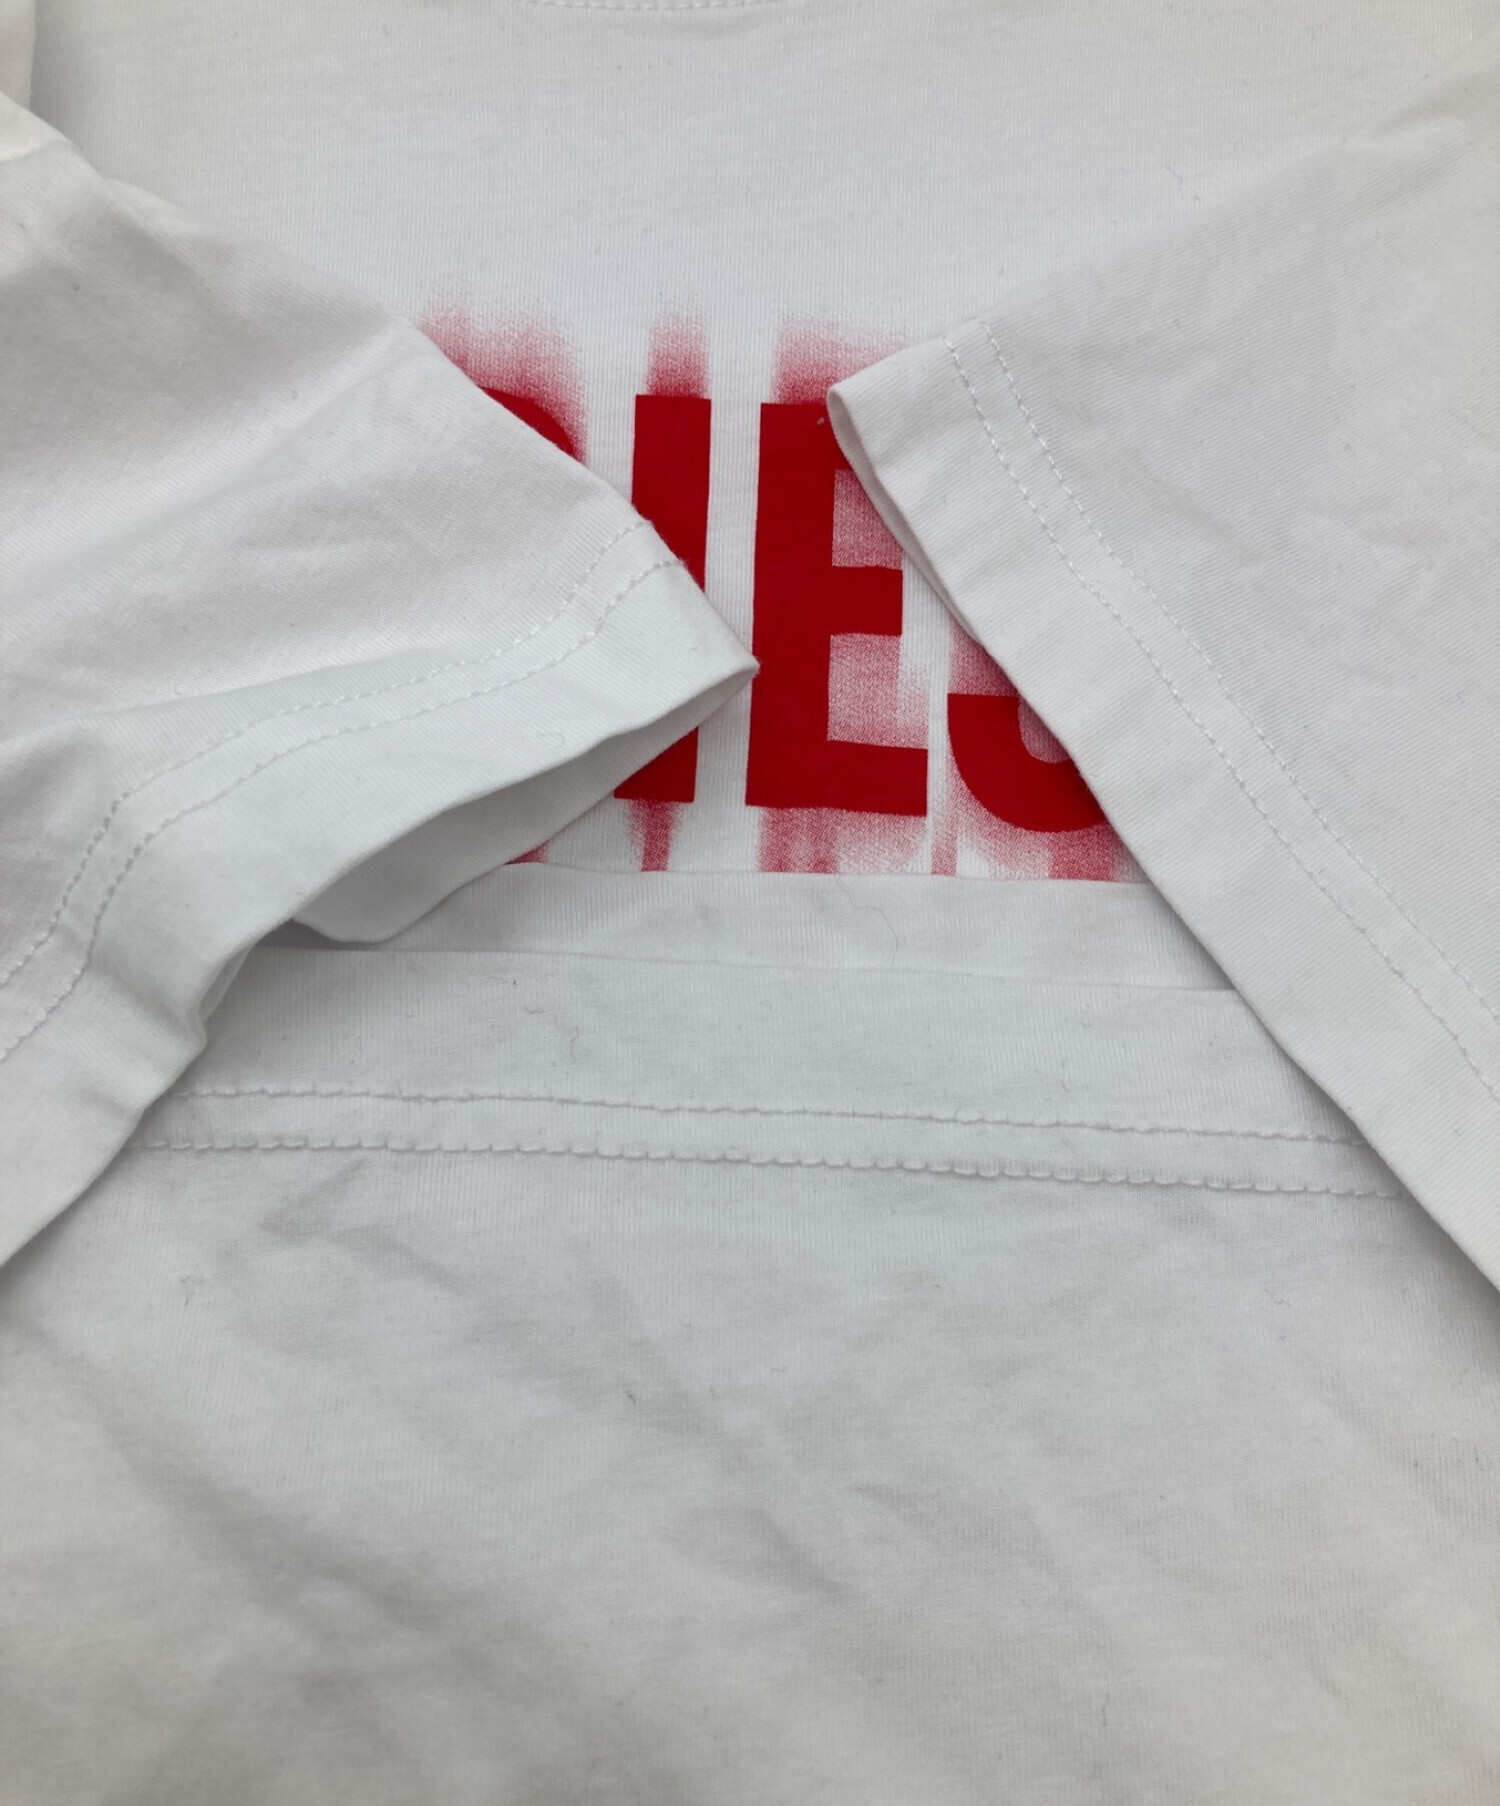 DIESEL (ディーゼル) T-Diegor-L6 ロゴ Tシャツ ホワイト サイズ:M